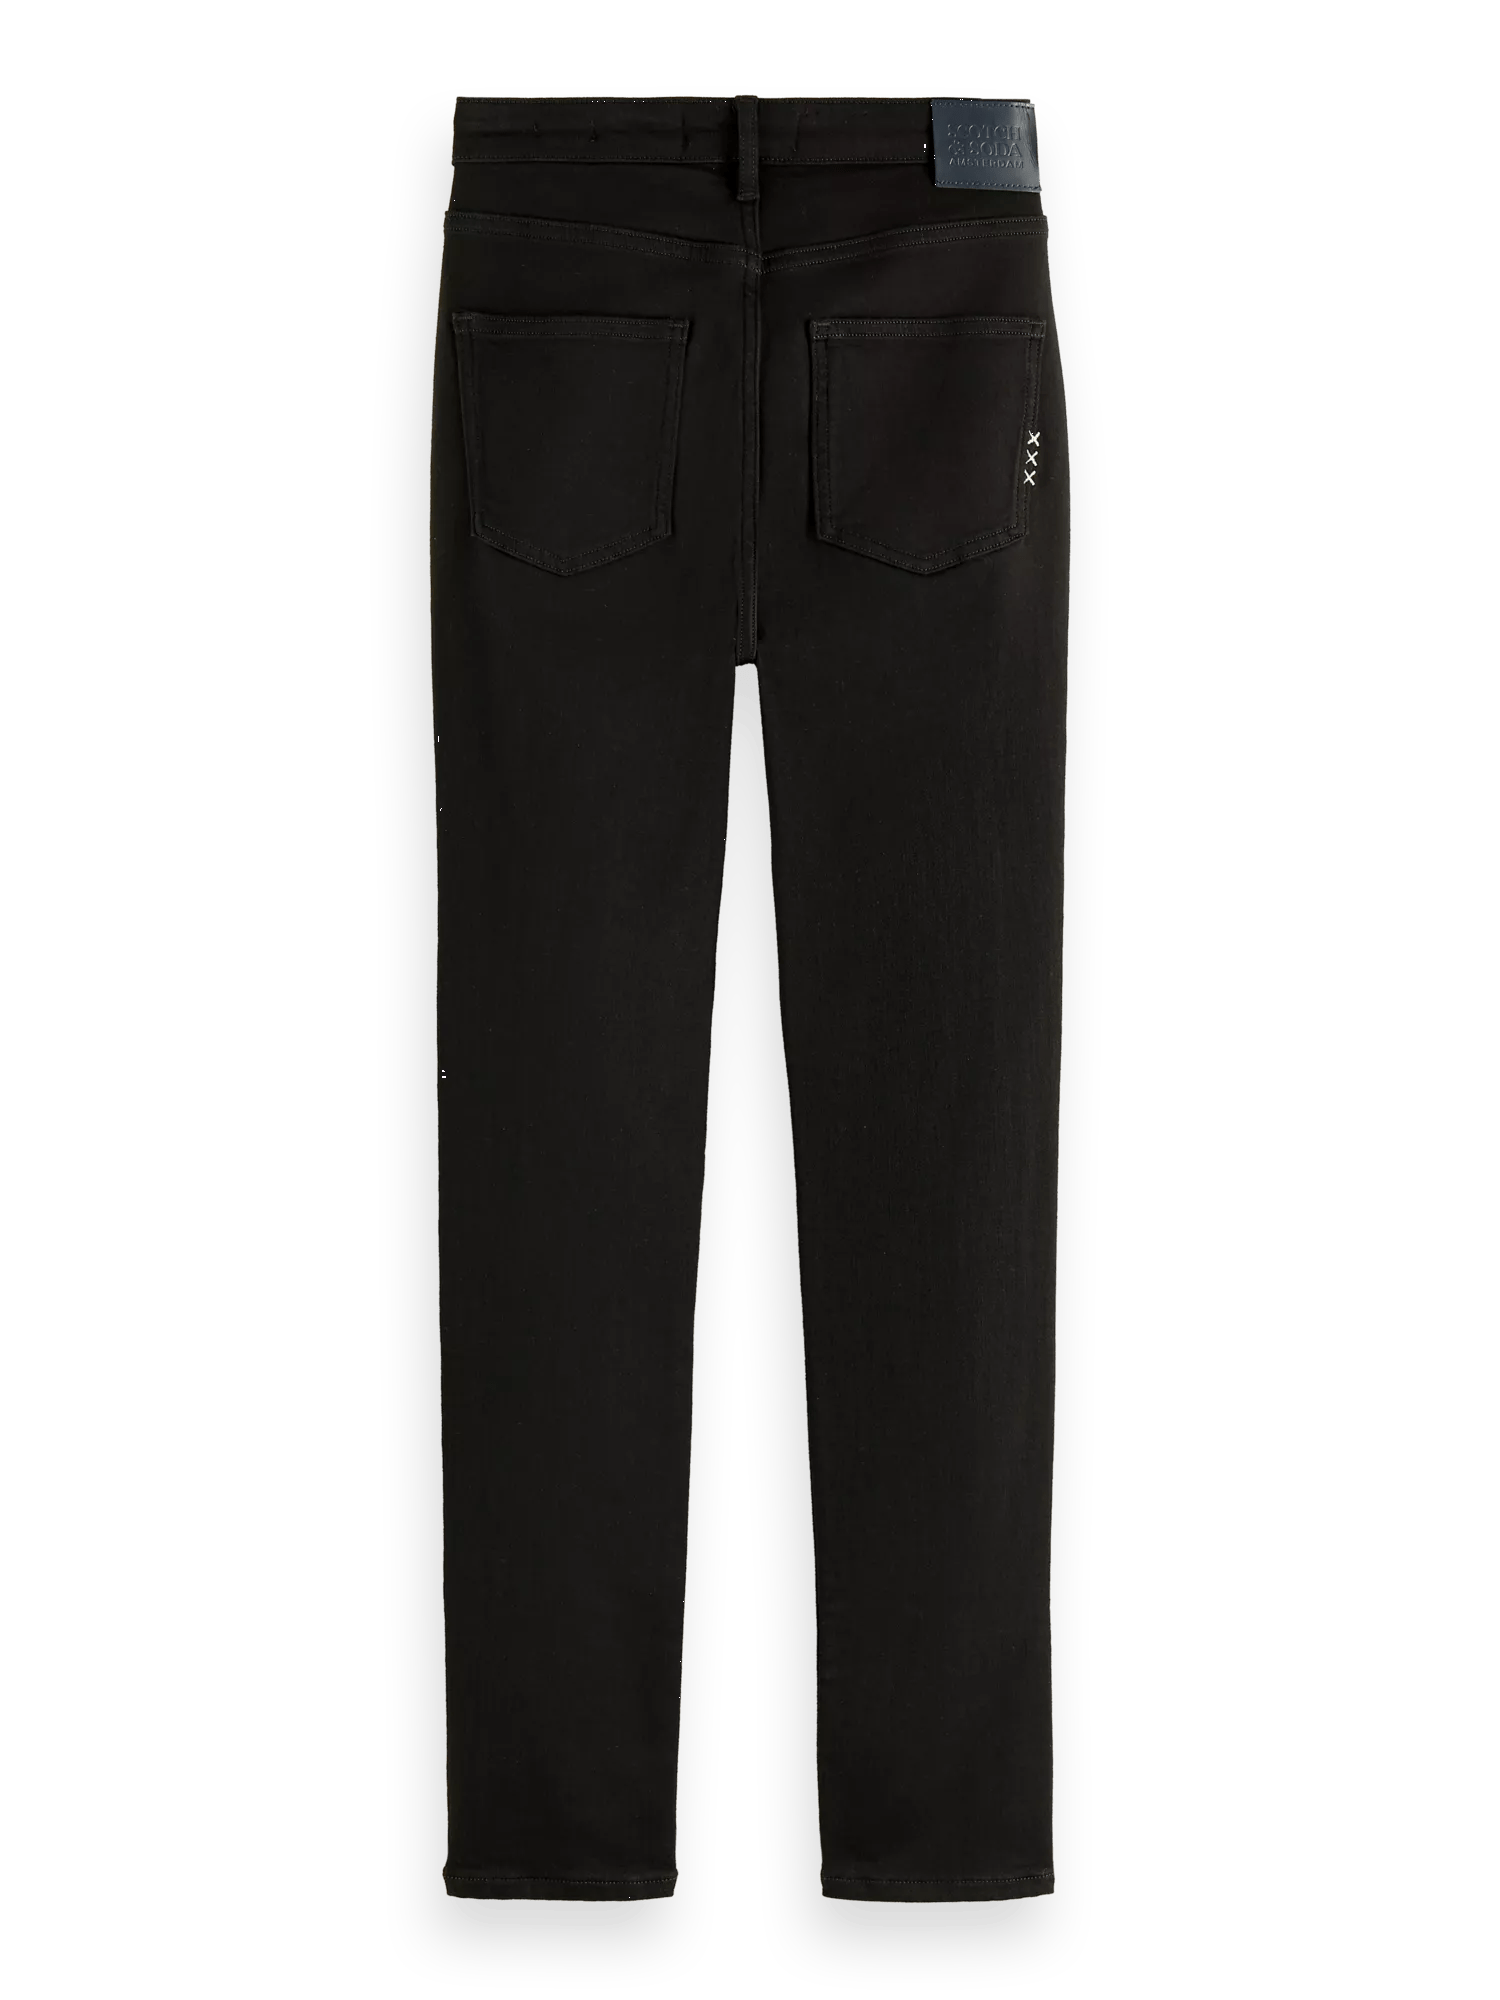 Scotch & Soda The Haut high-rise zwarte skinny jeans BCK